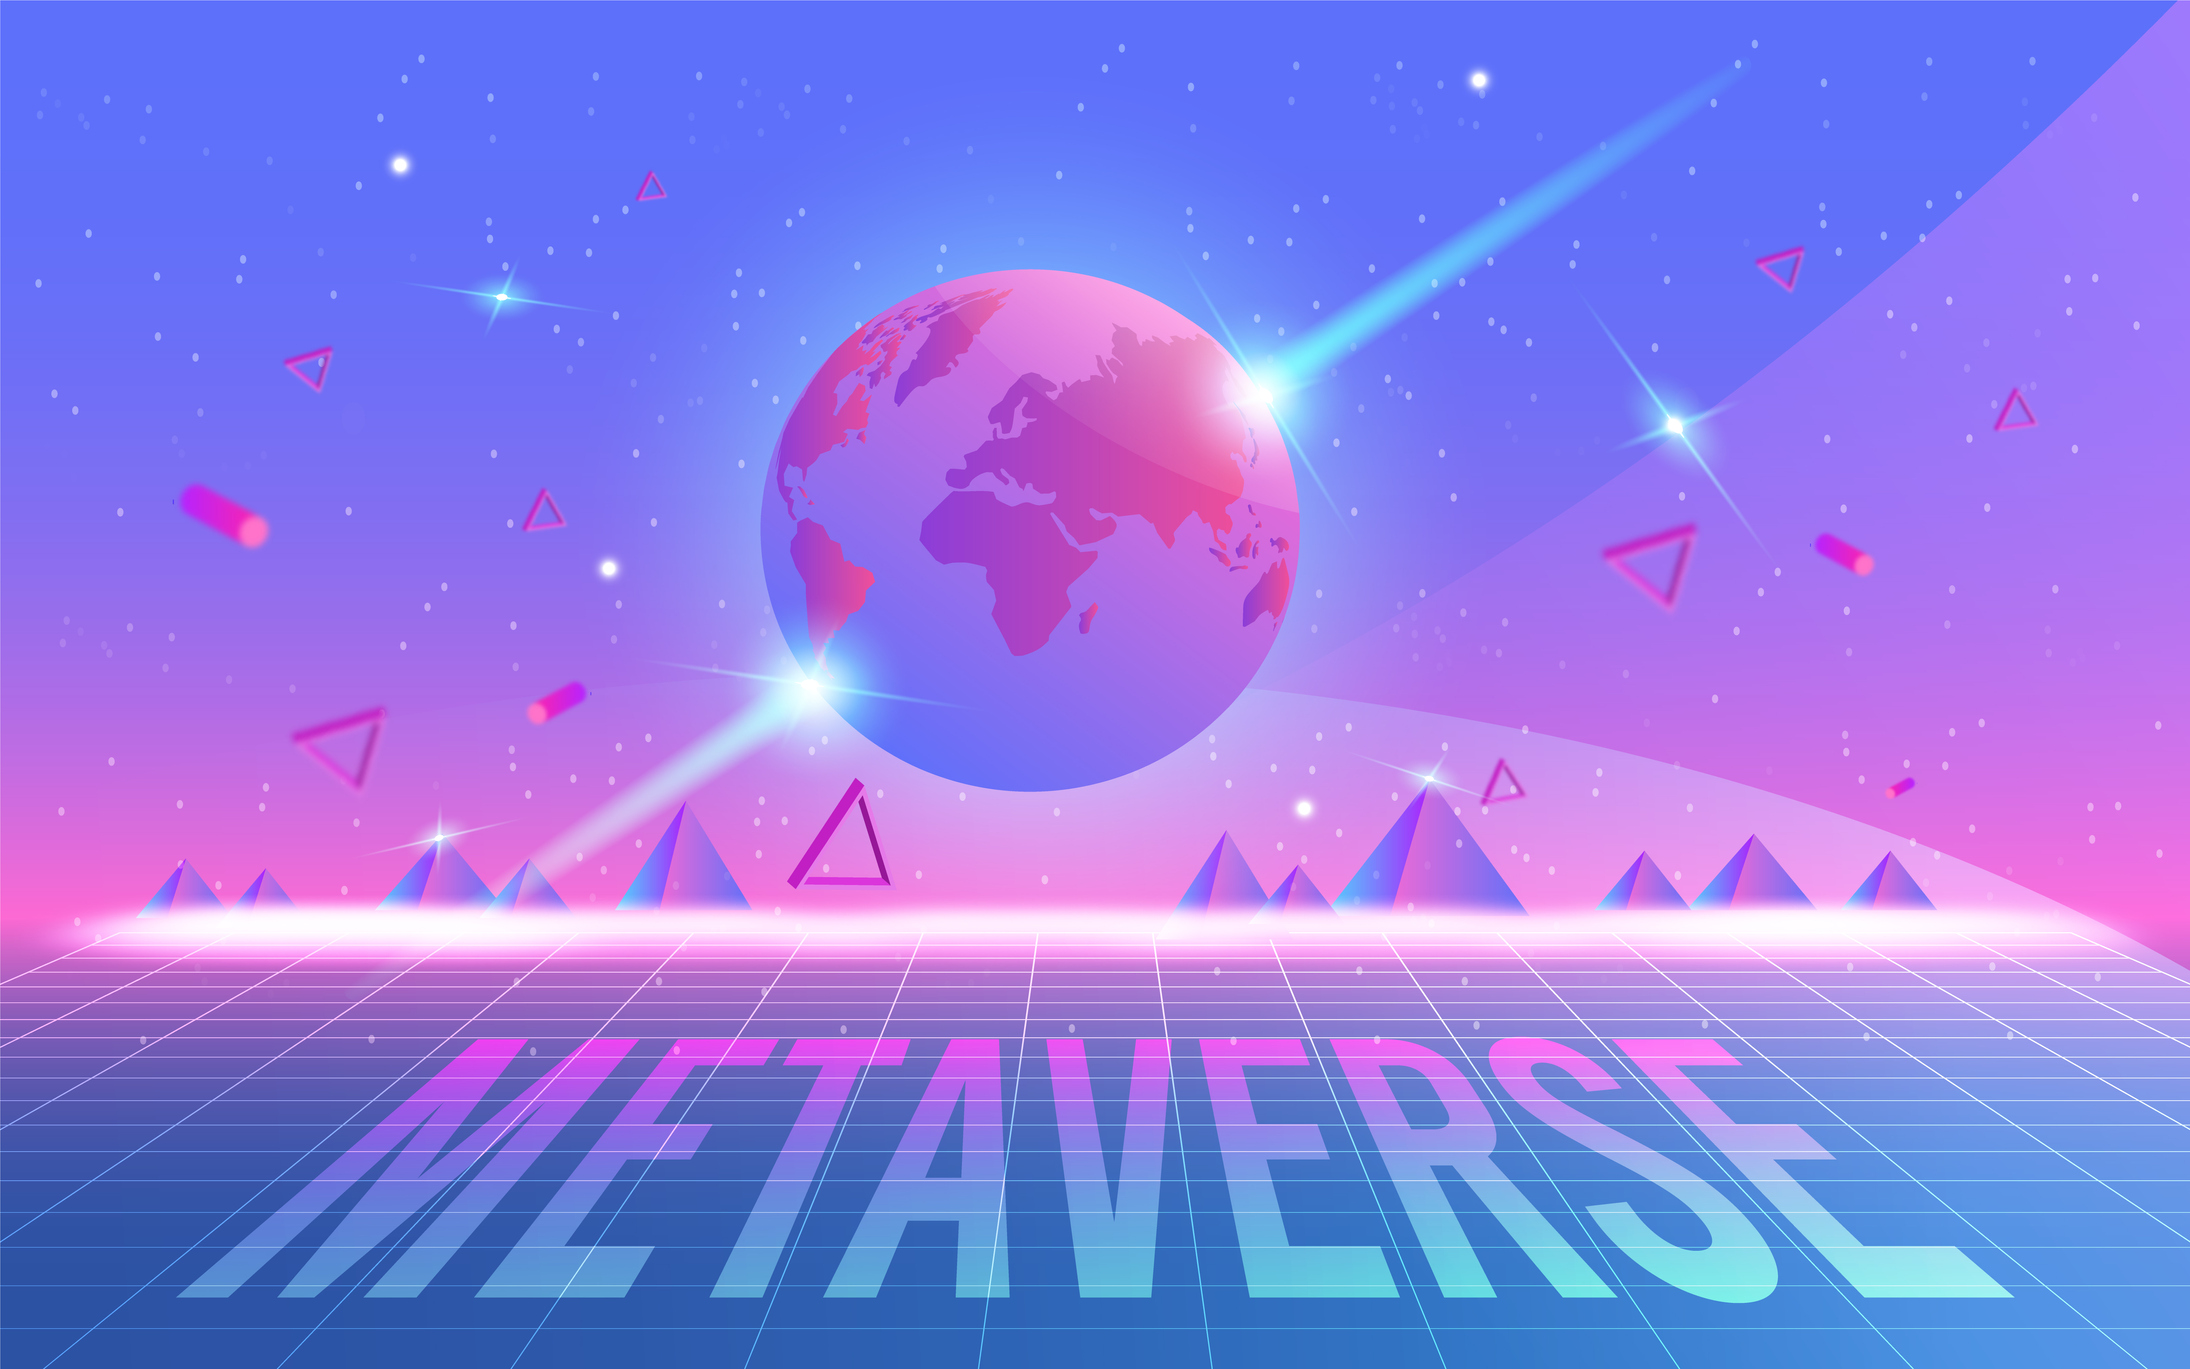 这是一张描绘元宇宙概念的插画，有地球图标悬浮在数字化风格的地平线上，背景是星空，前景写着“METAVERSE”。